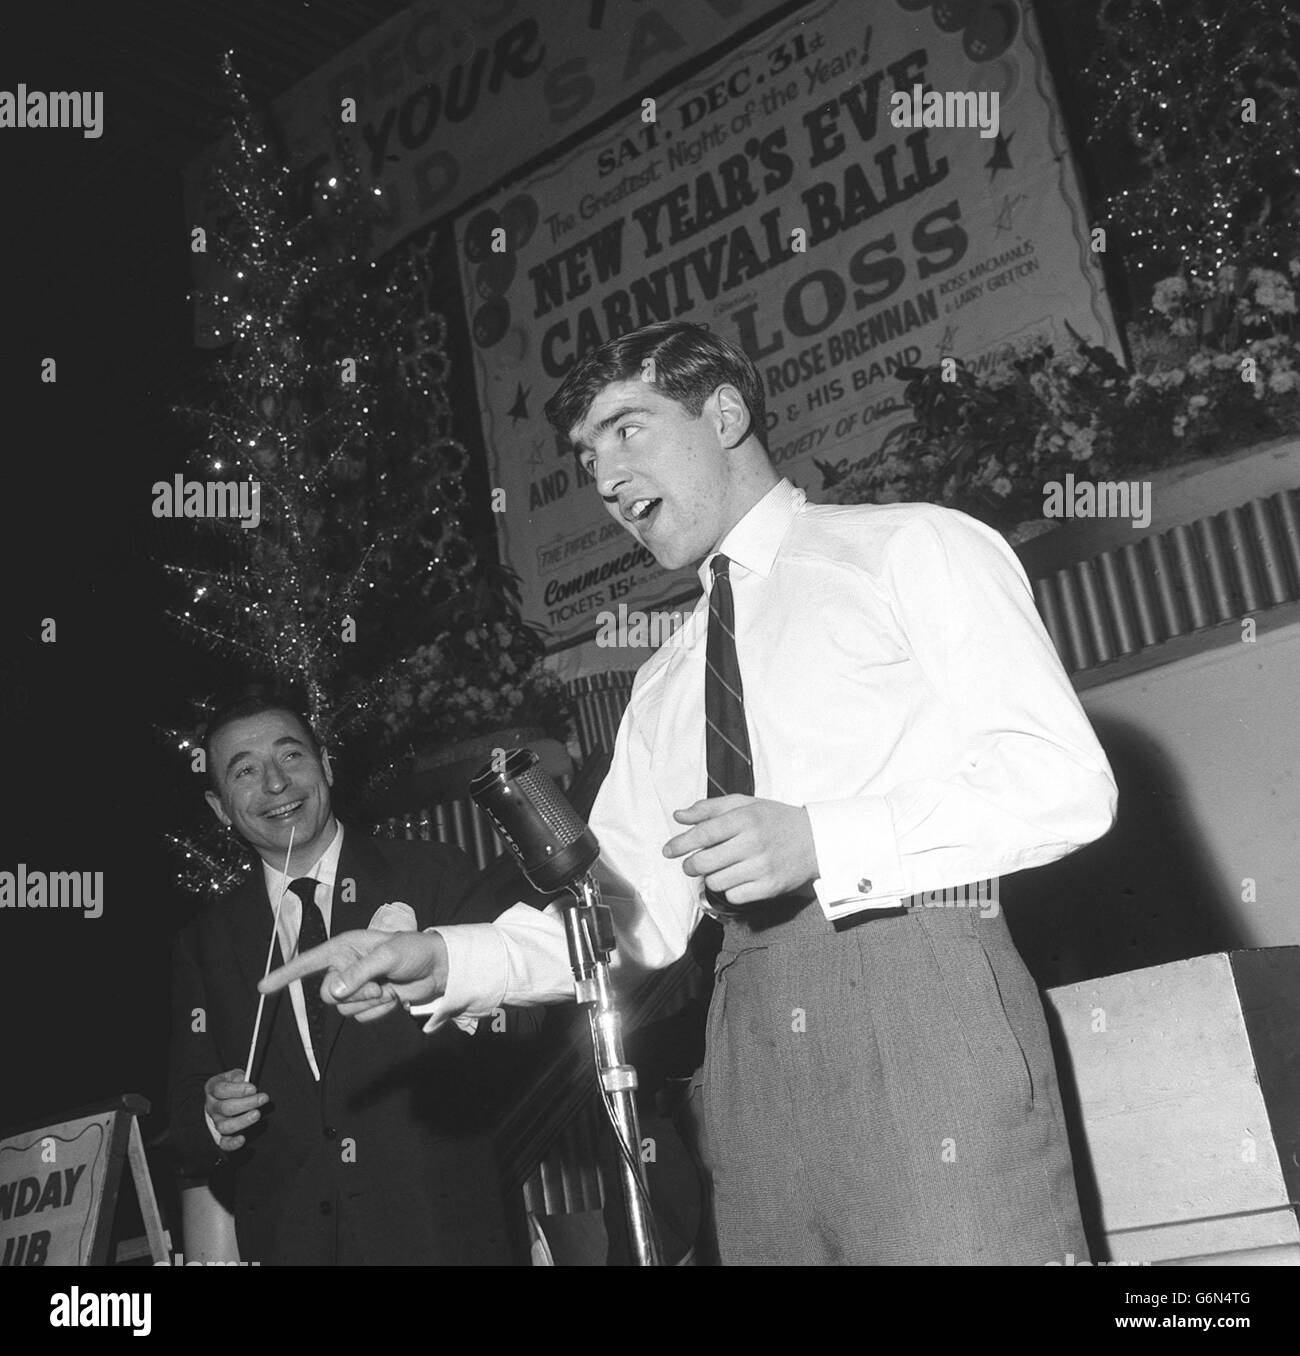 6 janvier - né ce jour - 1943 Chelsea demi-back Terry Venactive, 17 ans, se prépare pour ses débuts en tant que chanteur. Avec le chef de groupe Joe Loss, il répète au Hammersmith Palais, à Londres, pour sa première apparition ce soir. Il écrit certaines de ses propres chansons. Banque D'Images